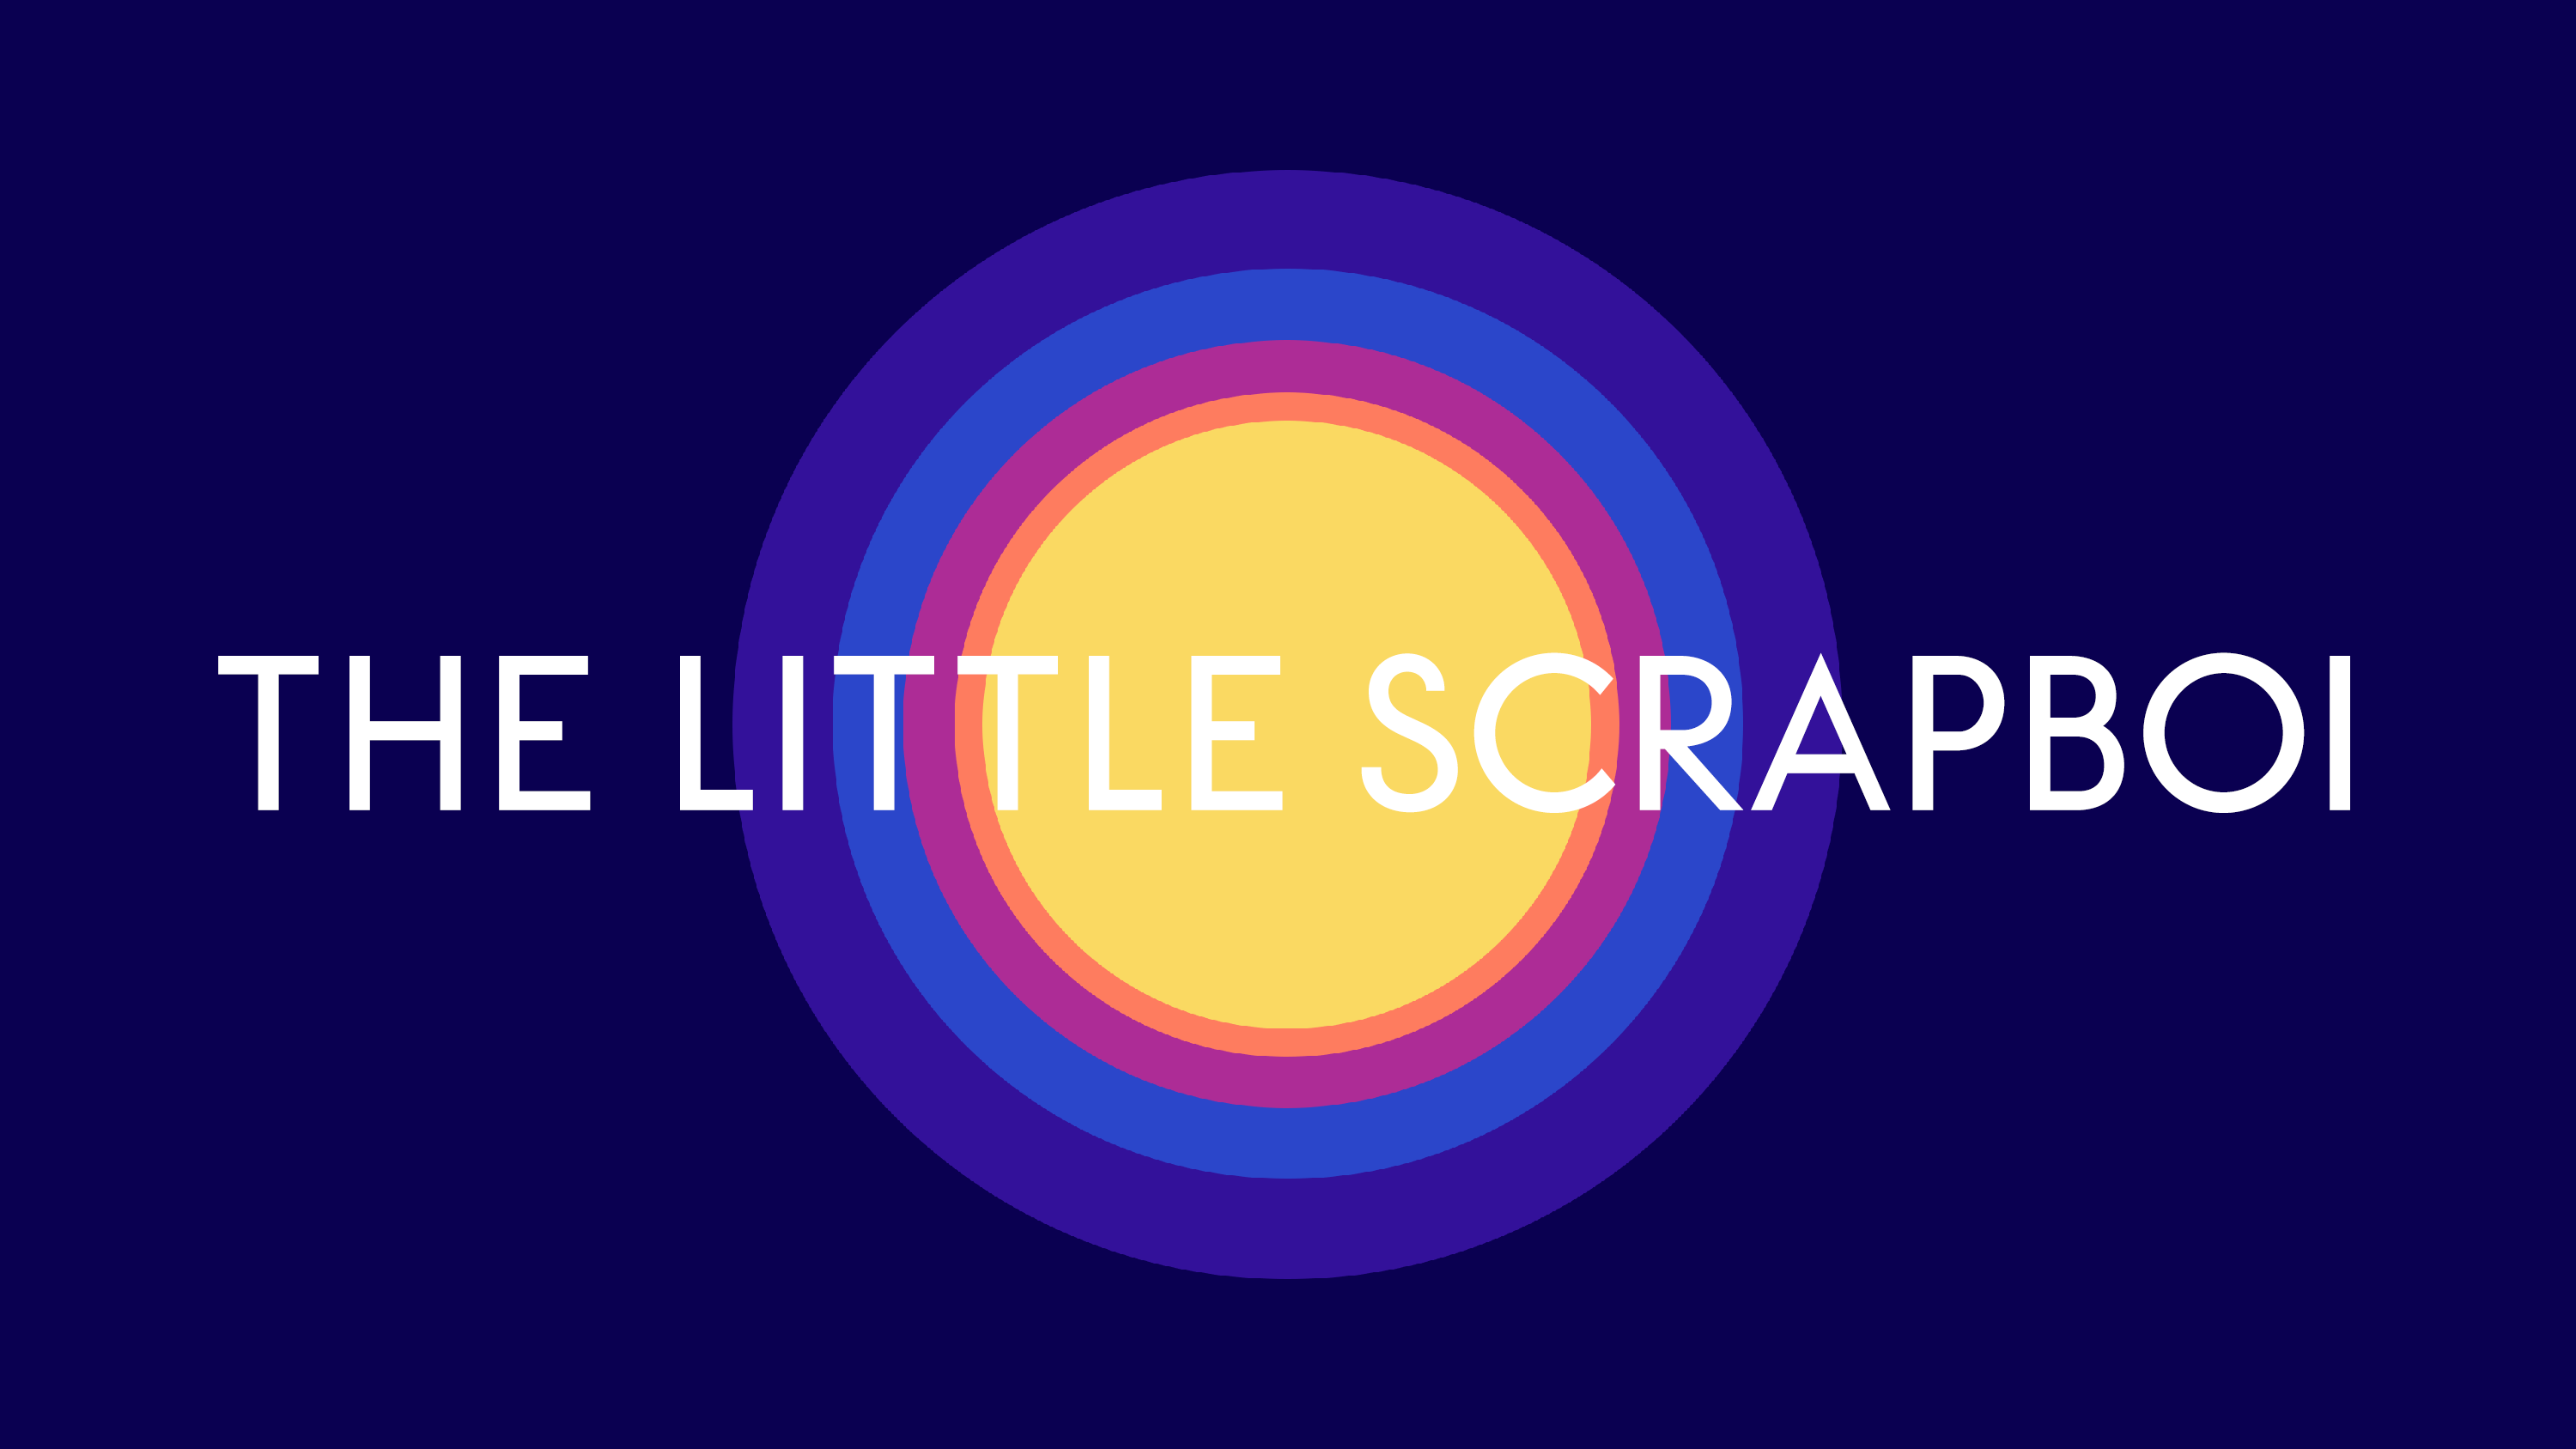 The Little Scrapboi